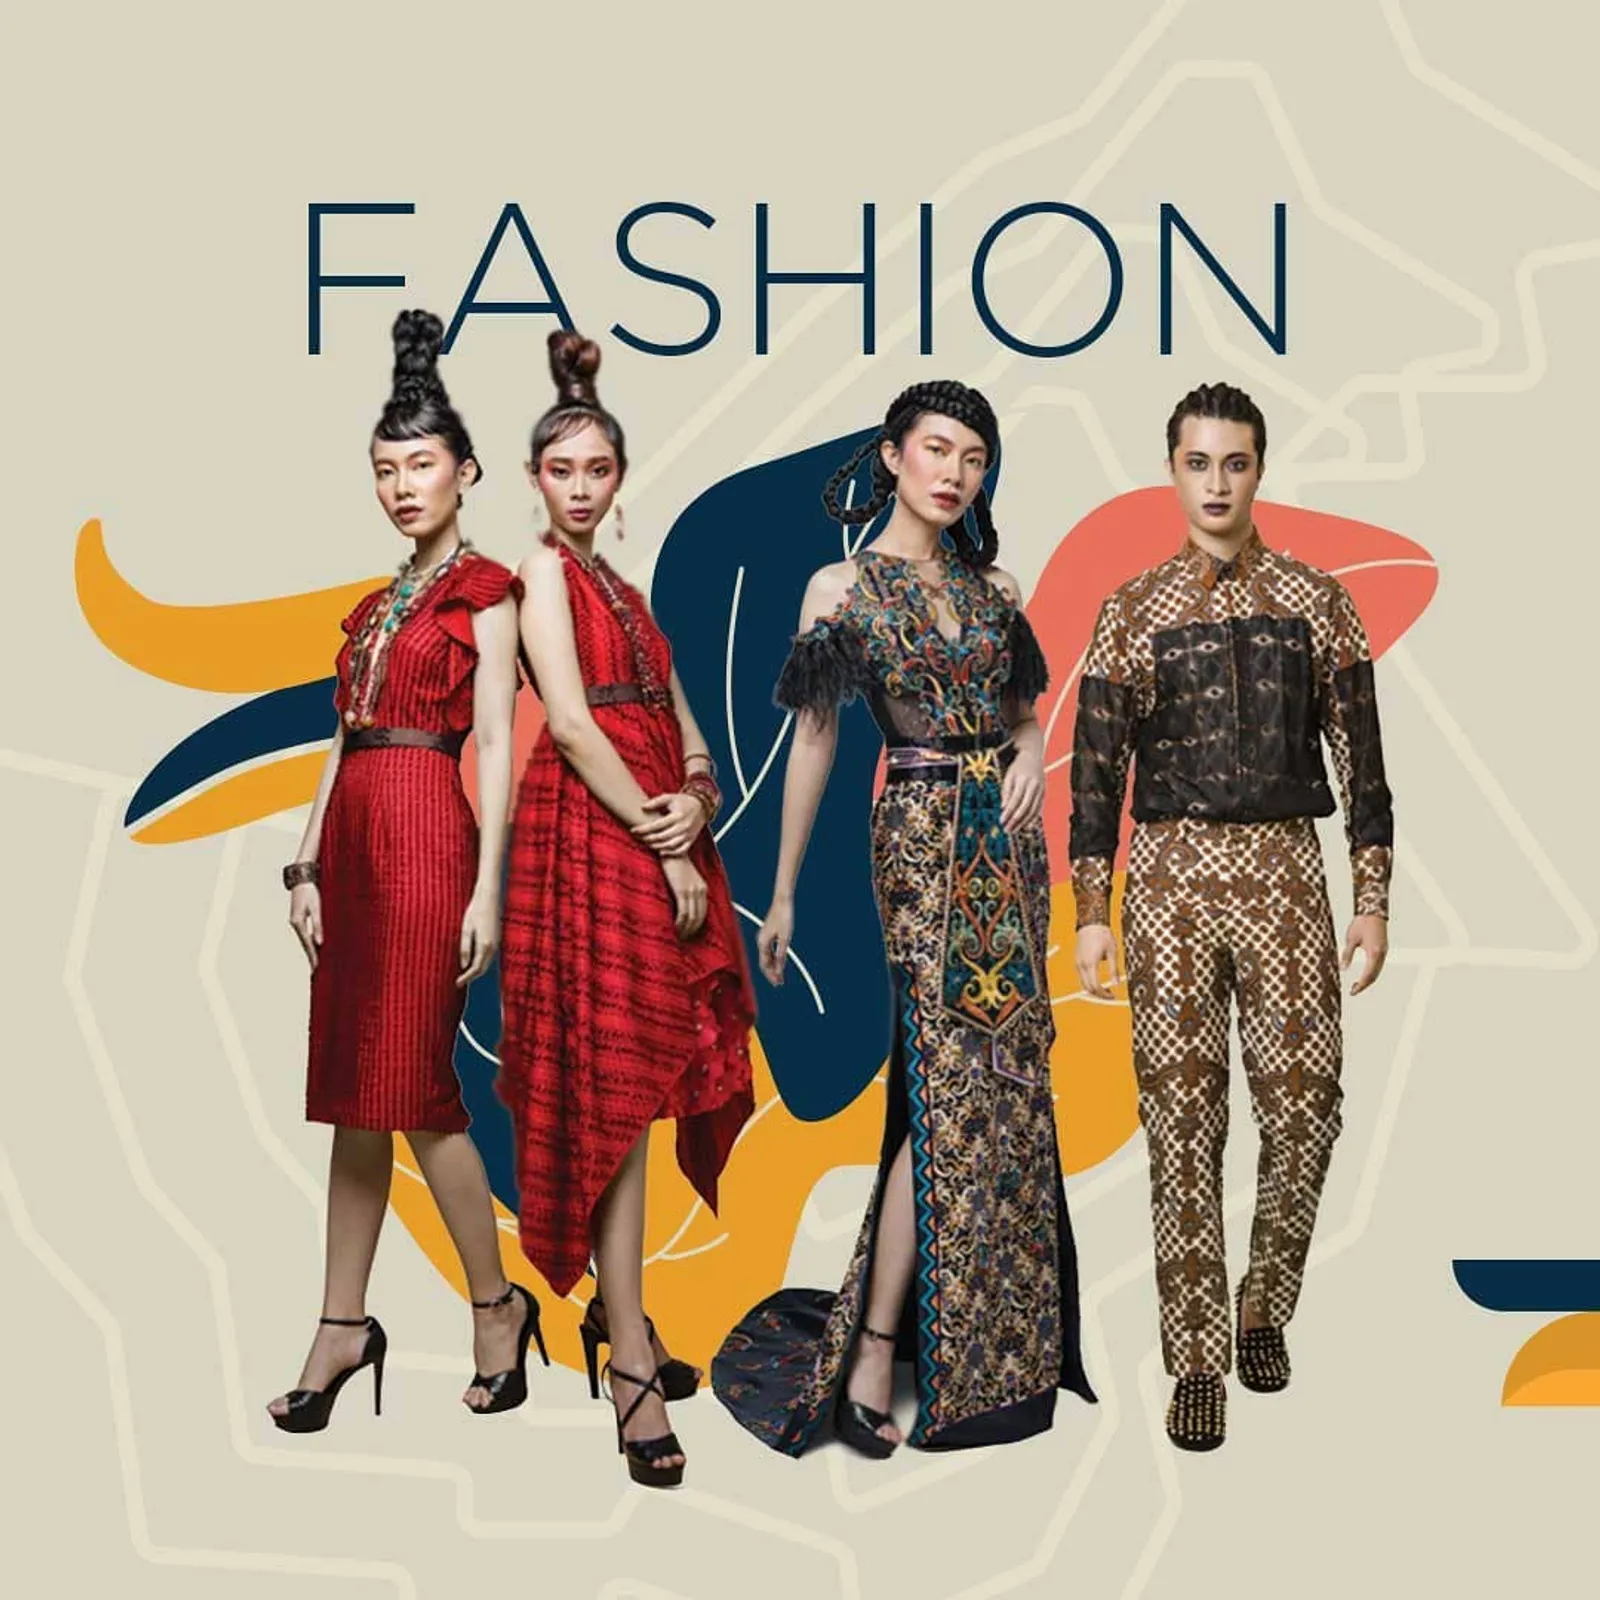 Indonesia Fashion Week 2020 Digelar Virtual, Bertema Budaya Kalimantan